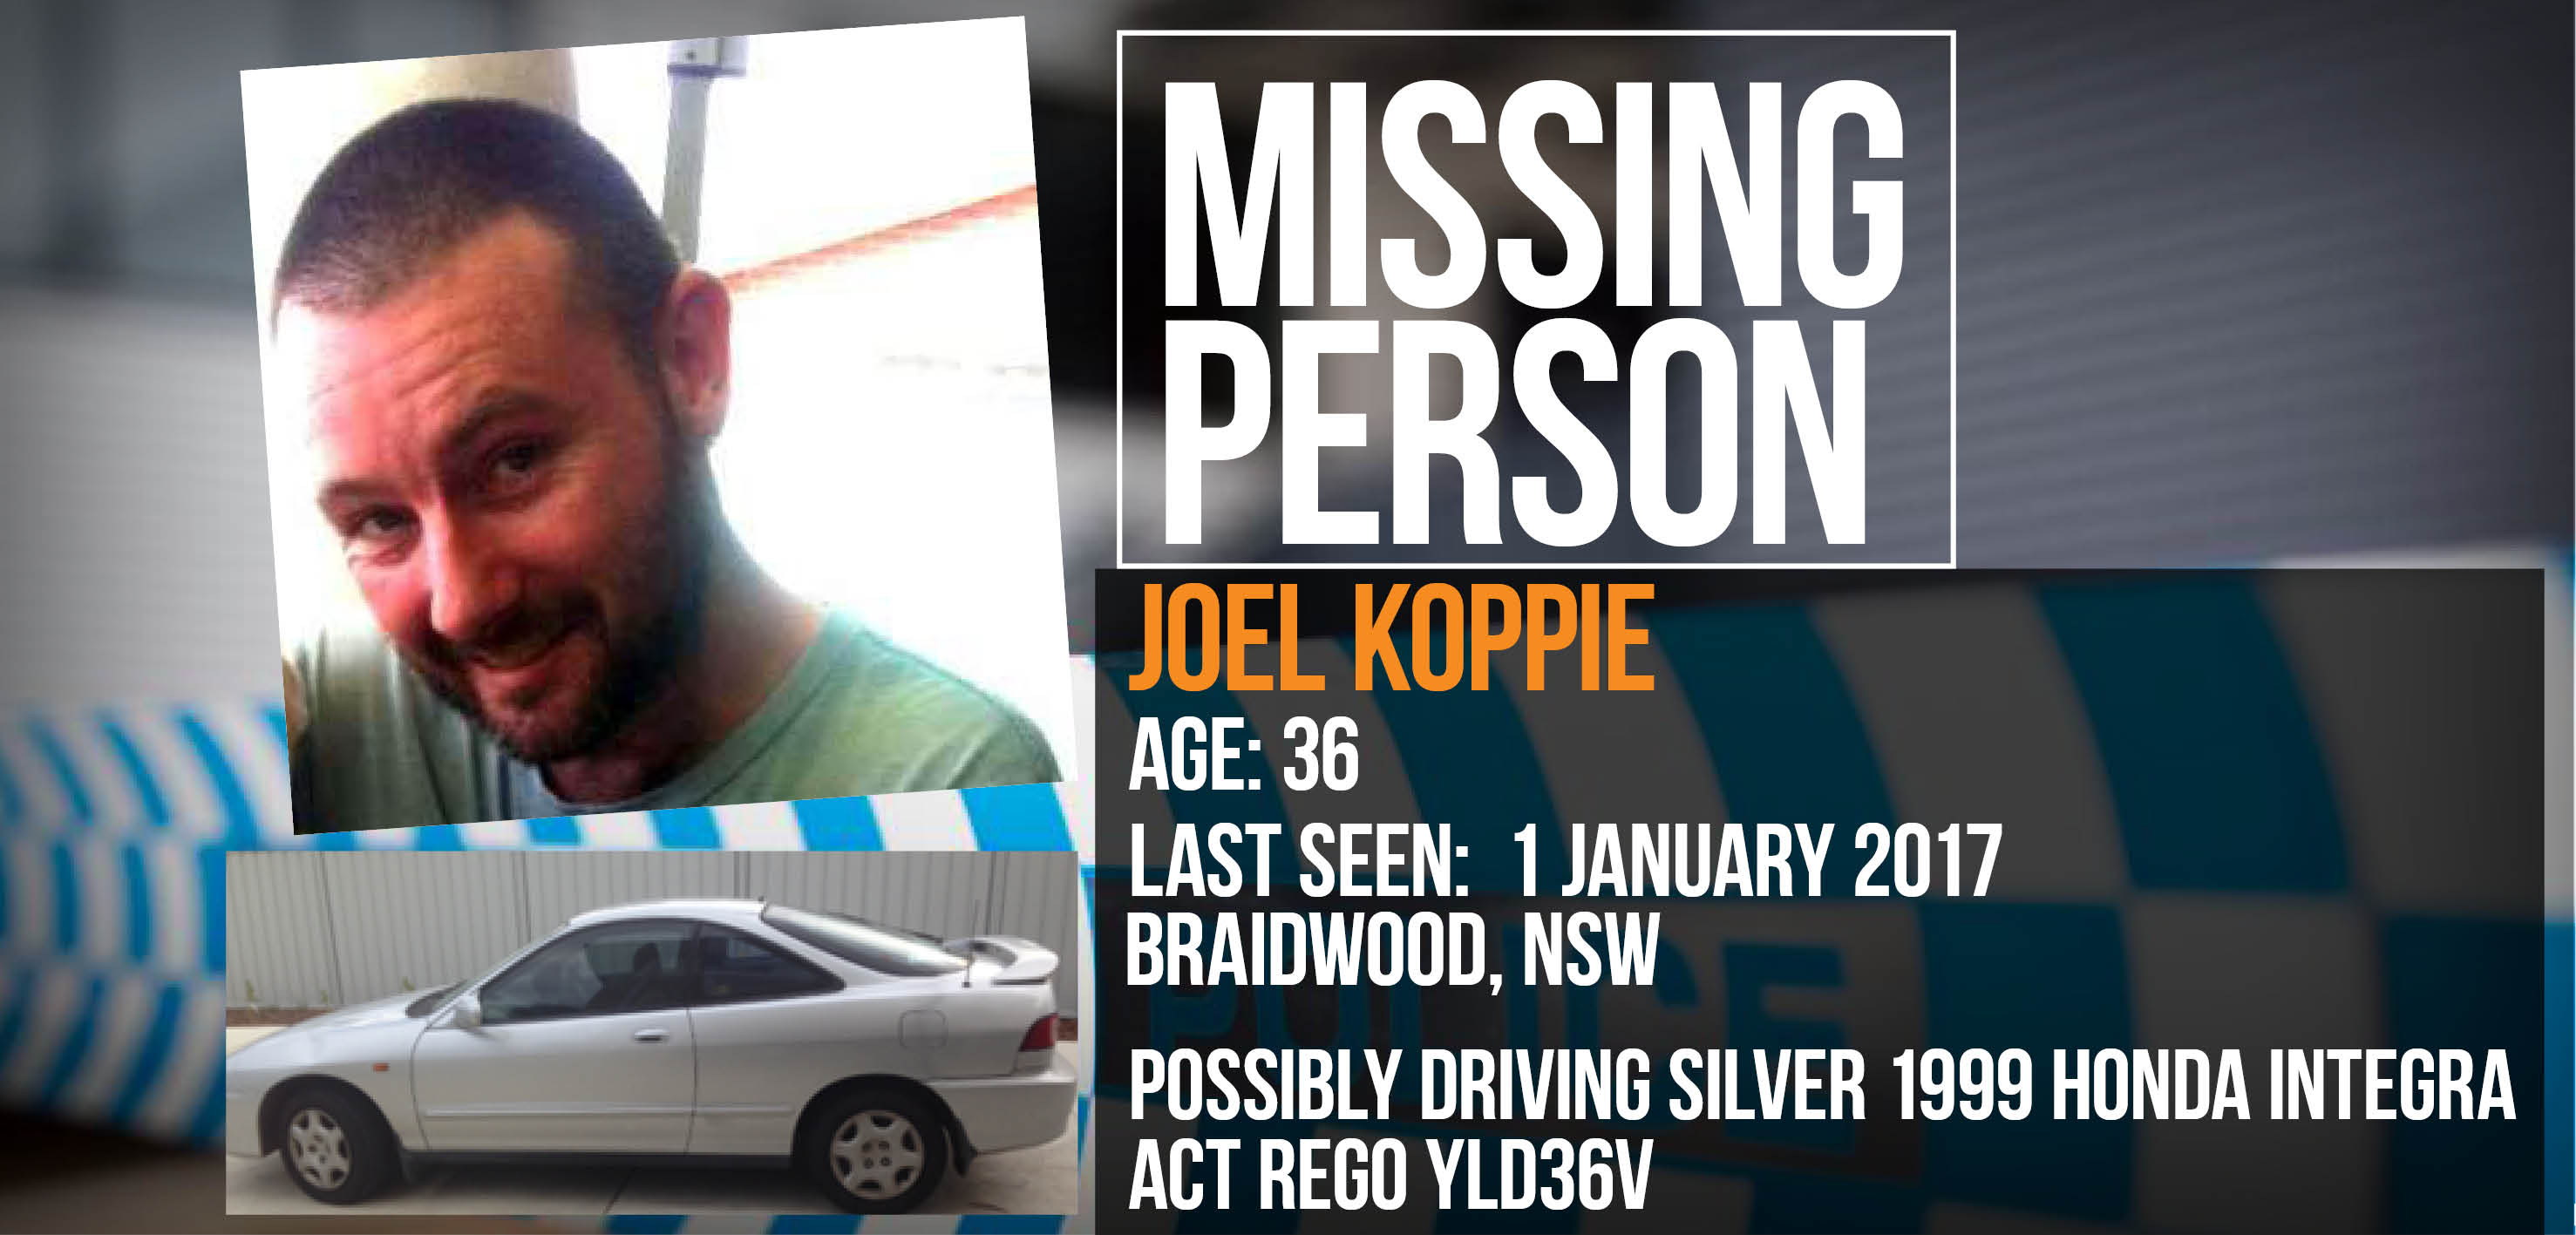 Missing person Joel Koppie